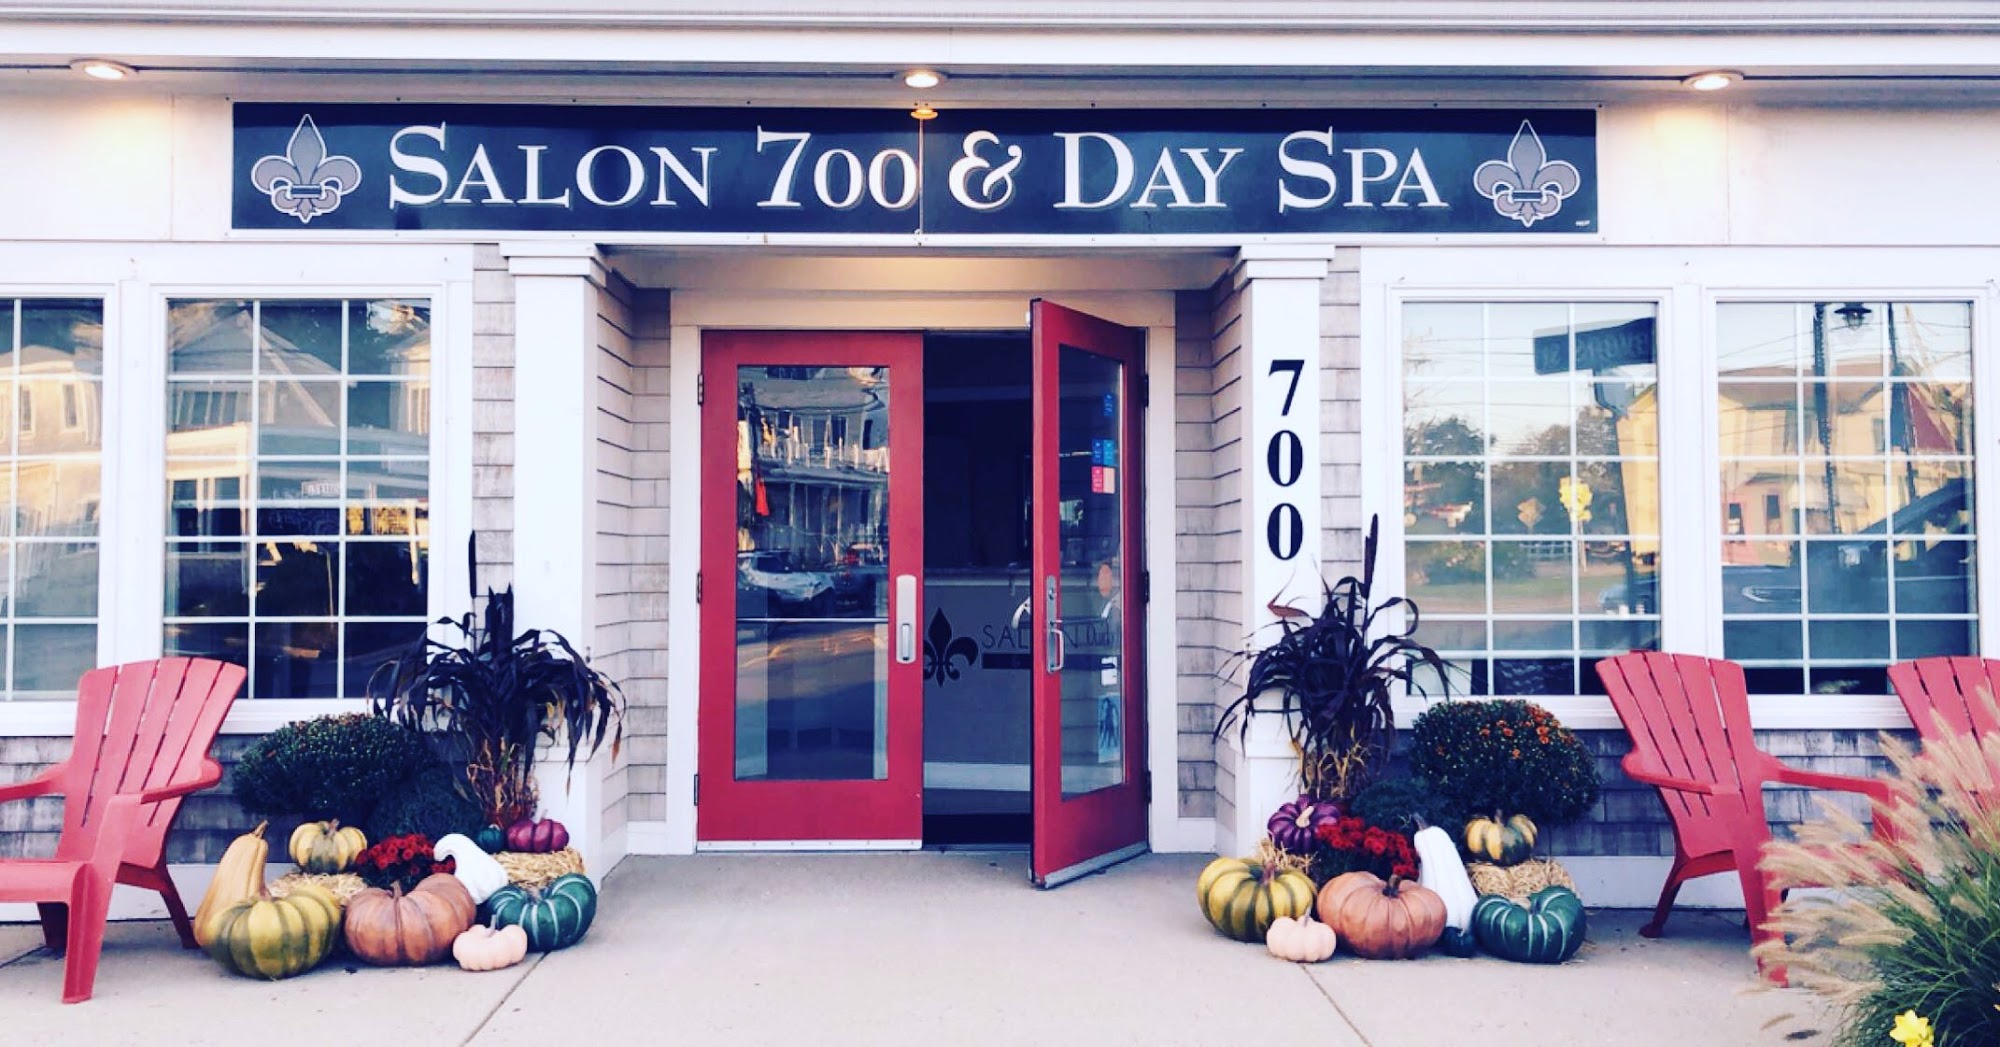 Salon 700 & Day Spa